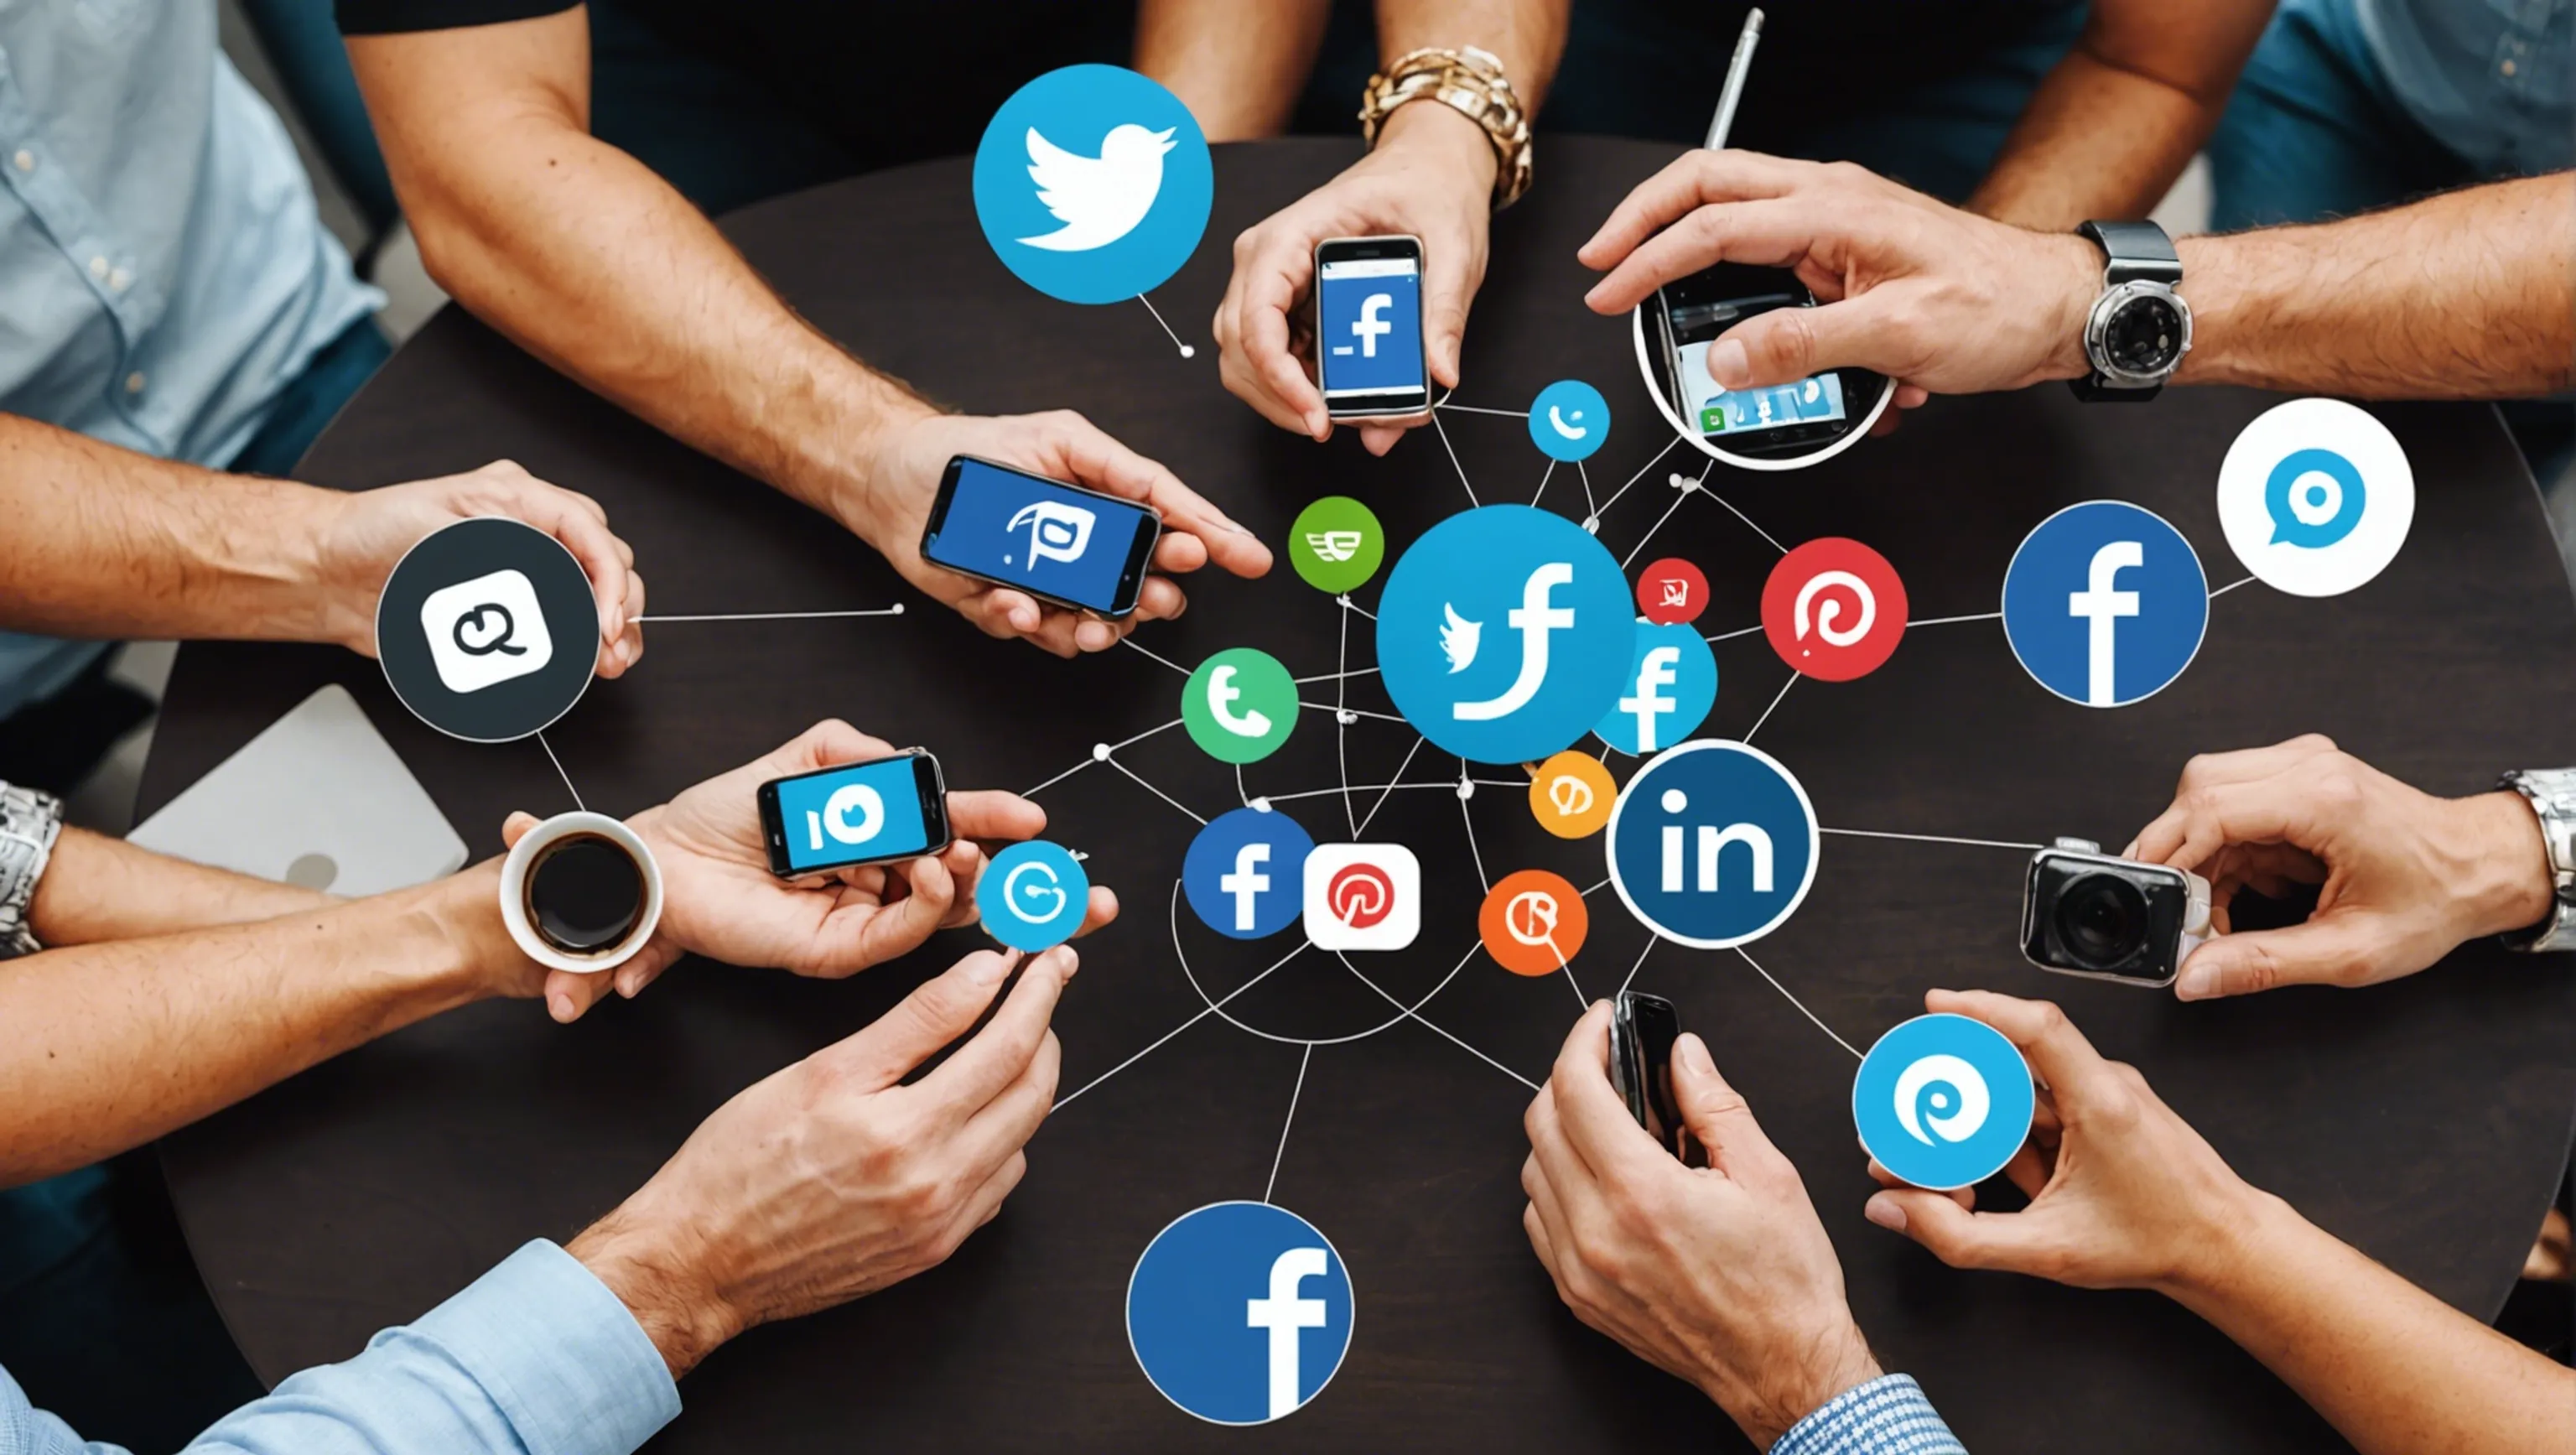 Social media engagement tactics for marketing professionals